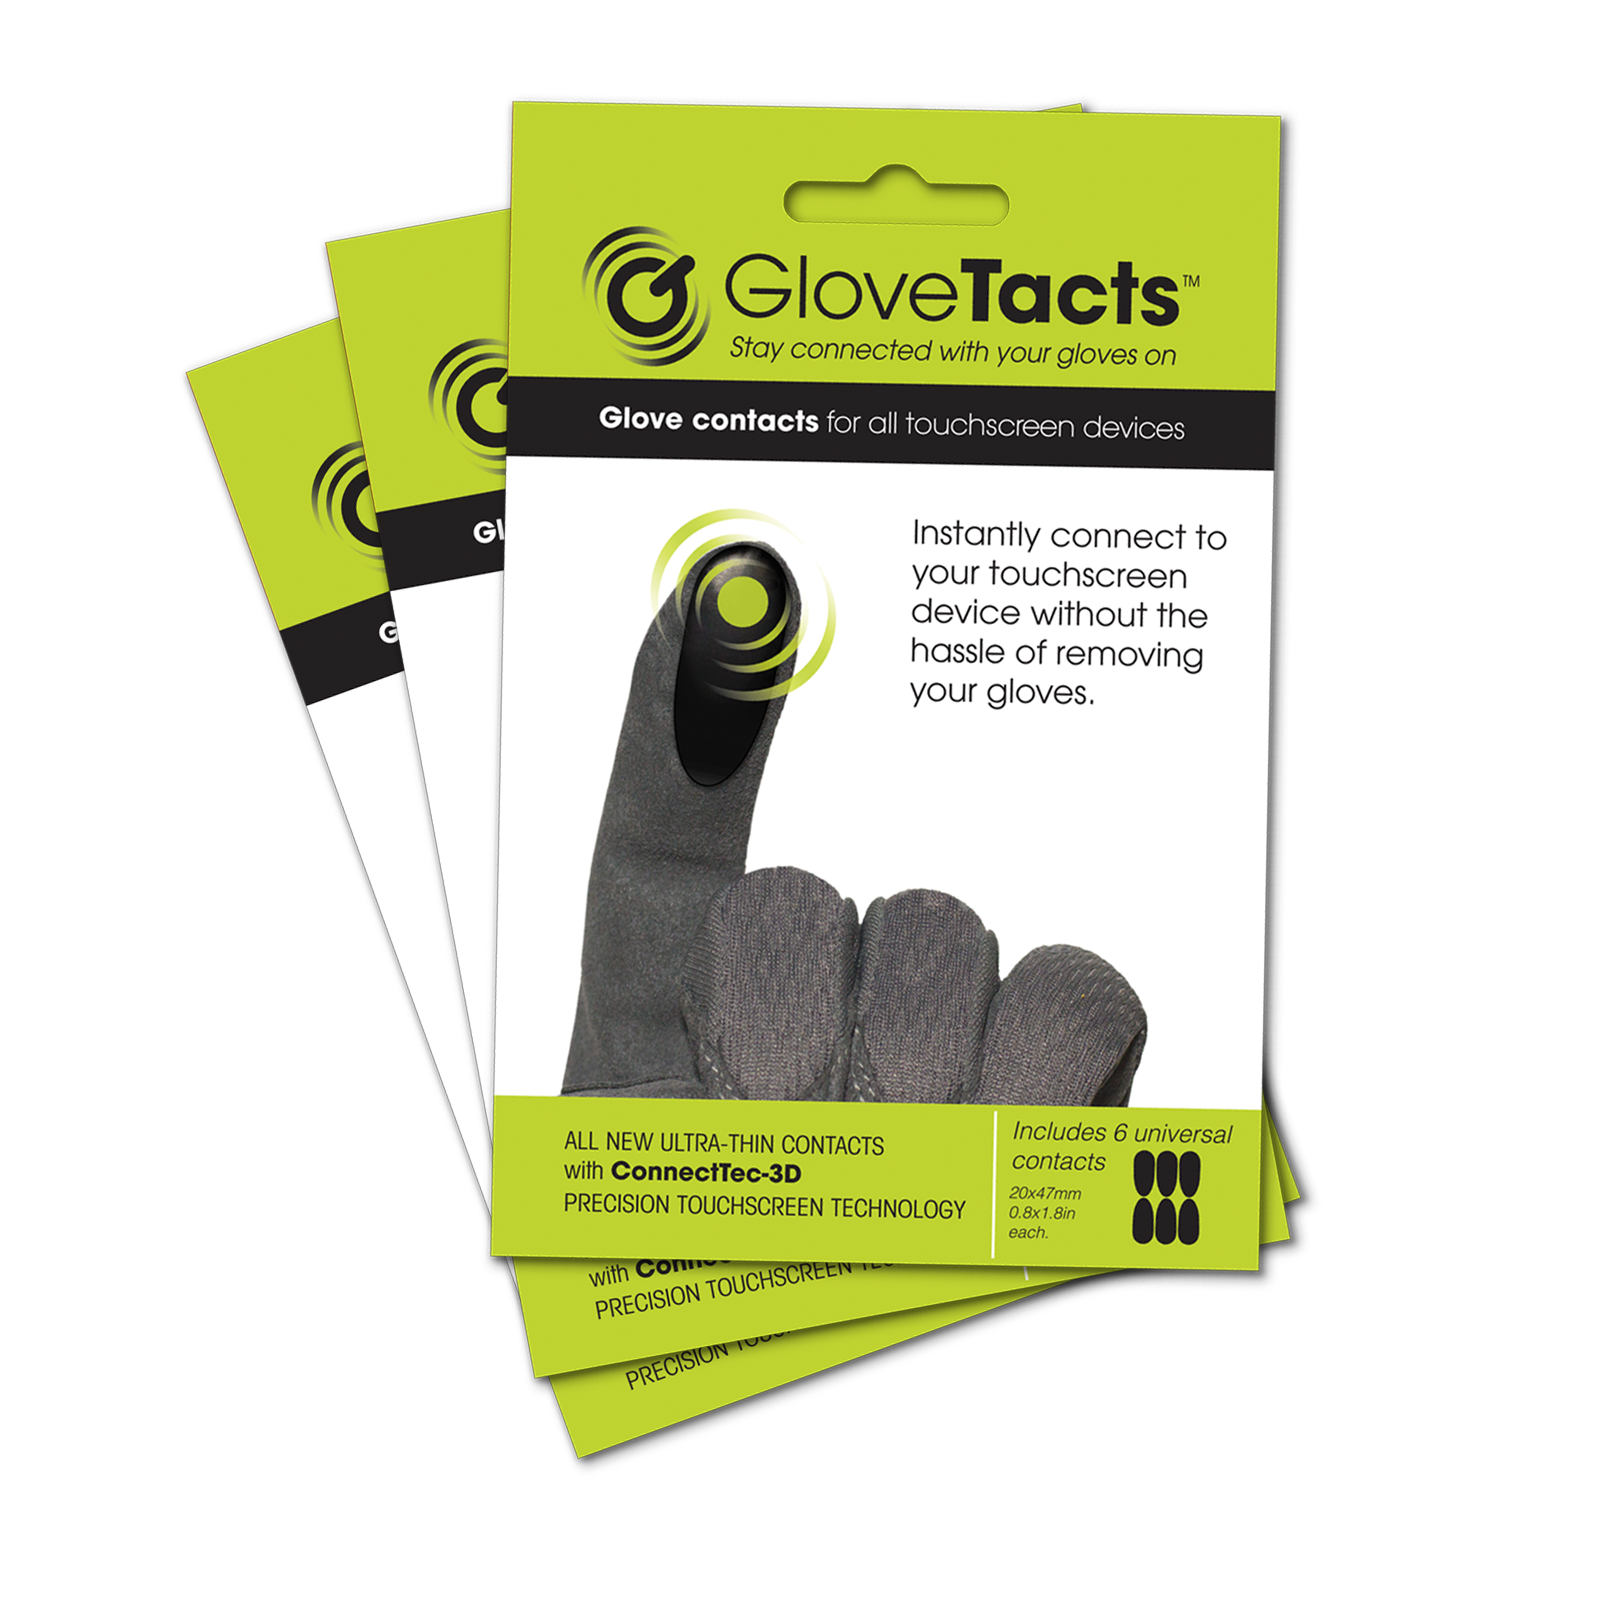 Paquete de 3 calcomanías conductoras GloveTacts - 18 calcomanías y ENVÍO GRATIS